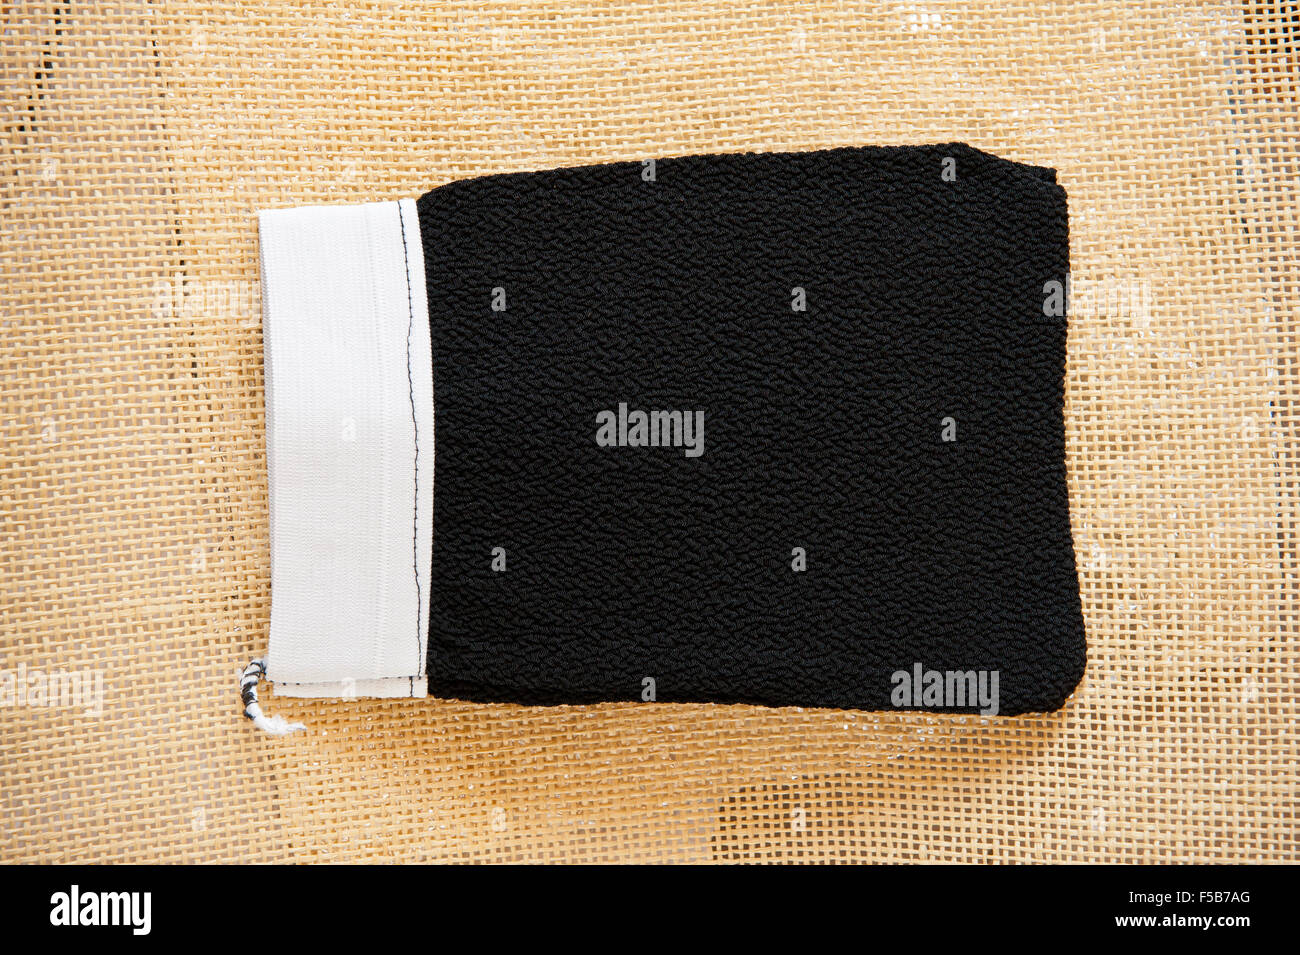 Marokkanische Peeling Kessa Handschuh für Hammam schrubben, schwarze Kessa grobe Krepp Materials liegen auf Matten, Pflege Körperpflege... Stockfoto